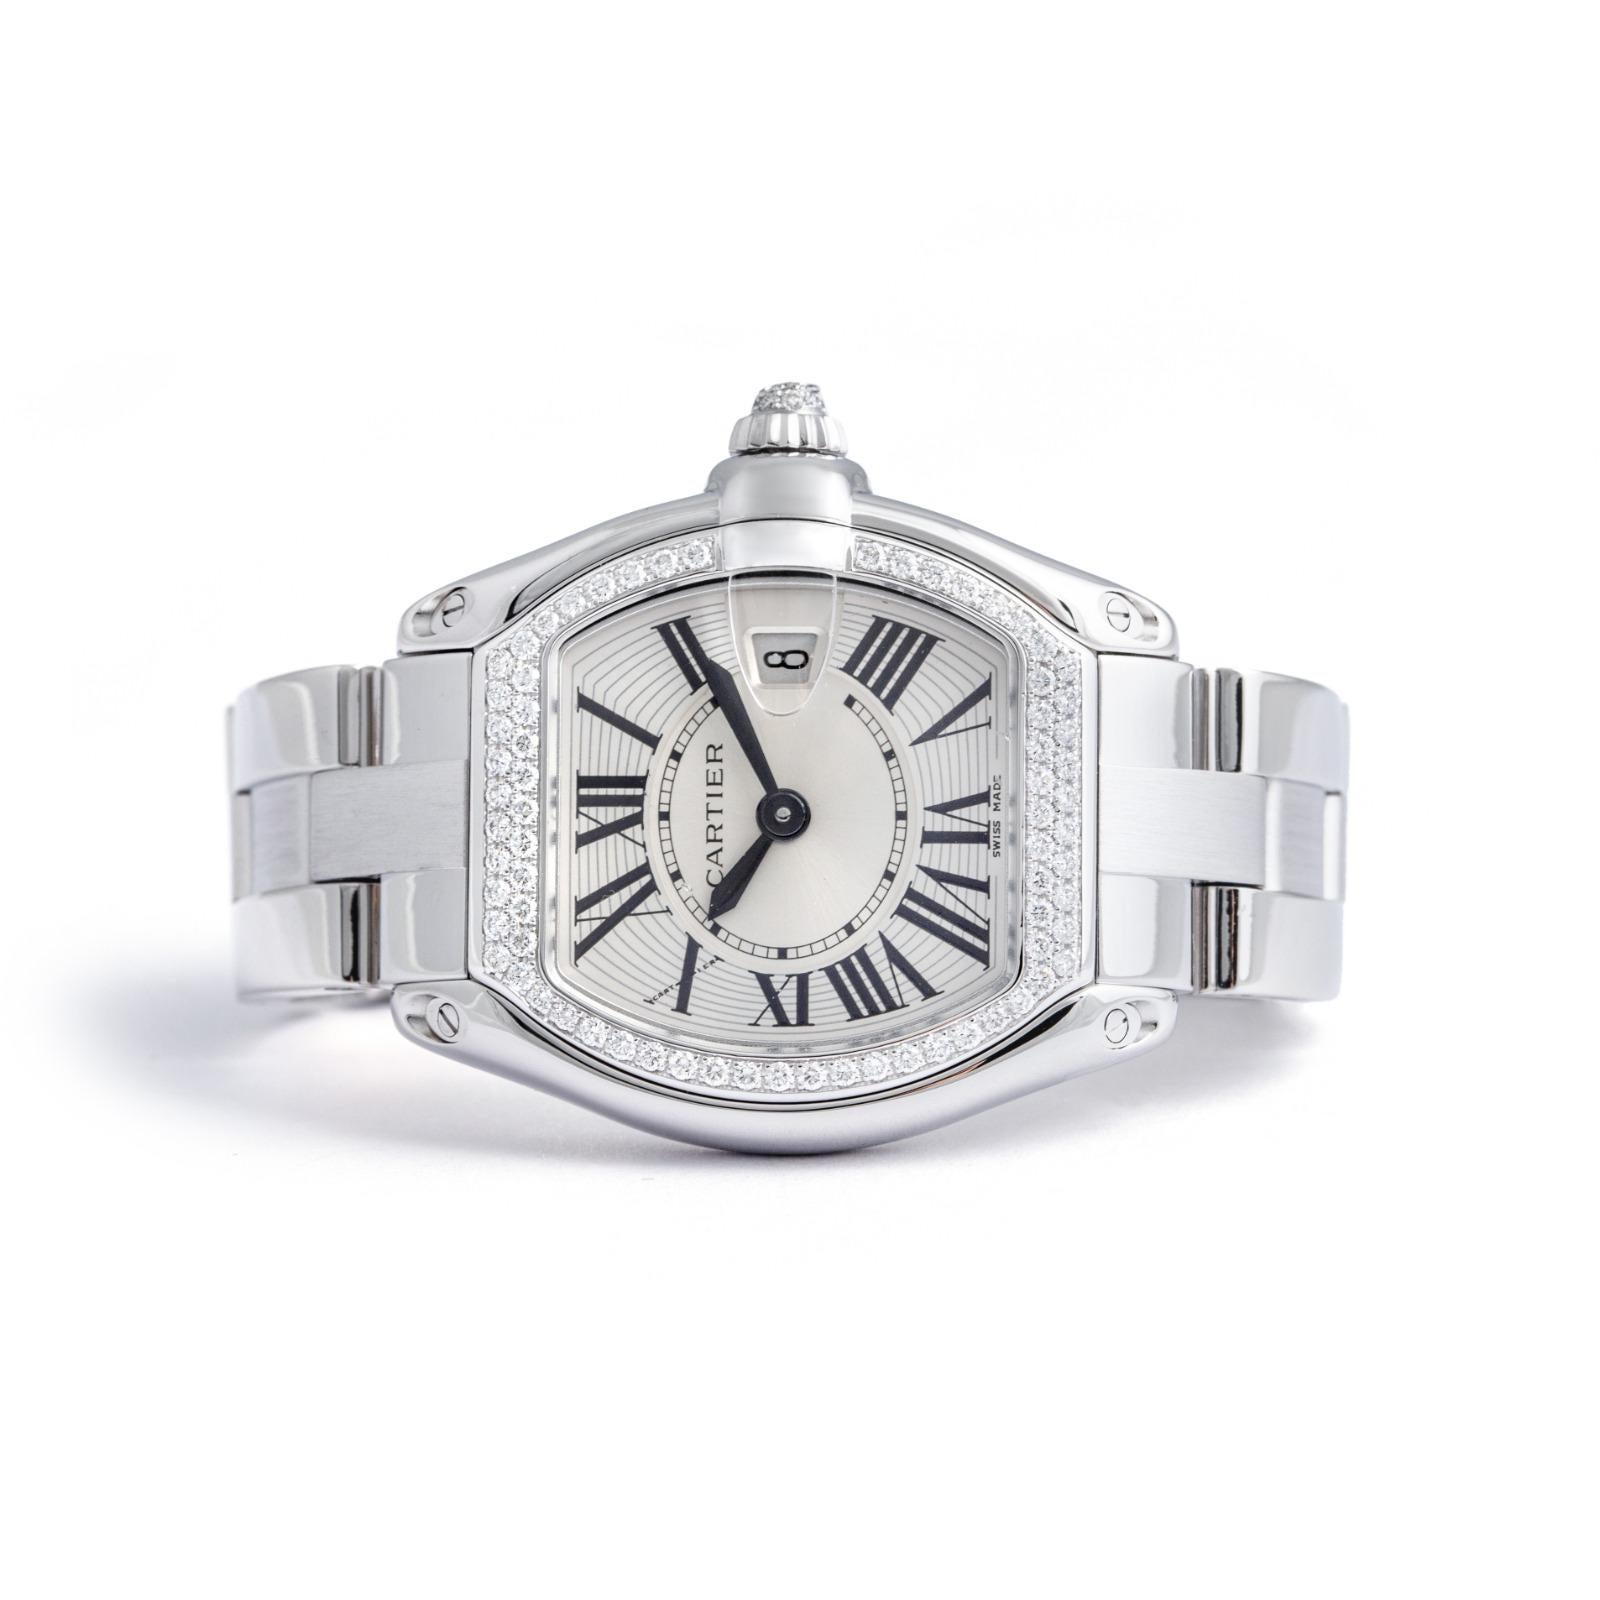 Montre-bracelet Cartier Roadster en or blanc 18 carats avec diamants.
Signé Cartier, numéroté et marqué.

Entièrement poli, le mouvement fonctionne au moment de l'annonce.


